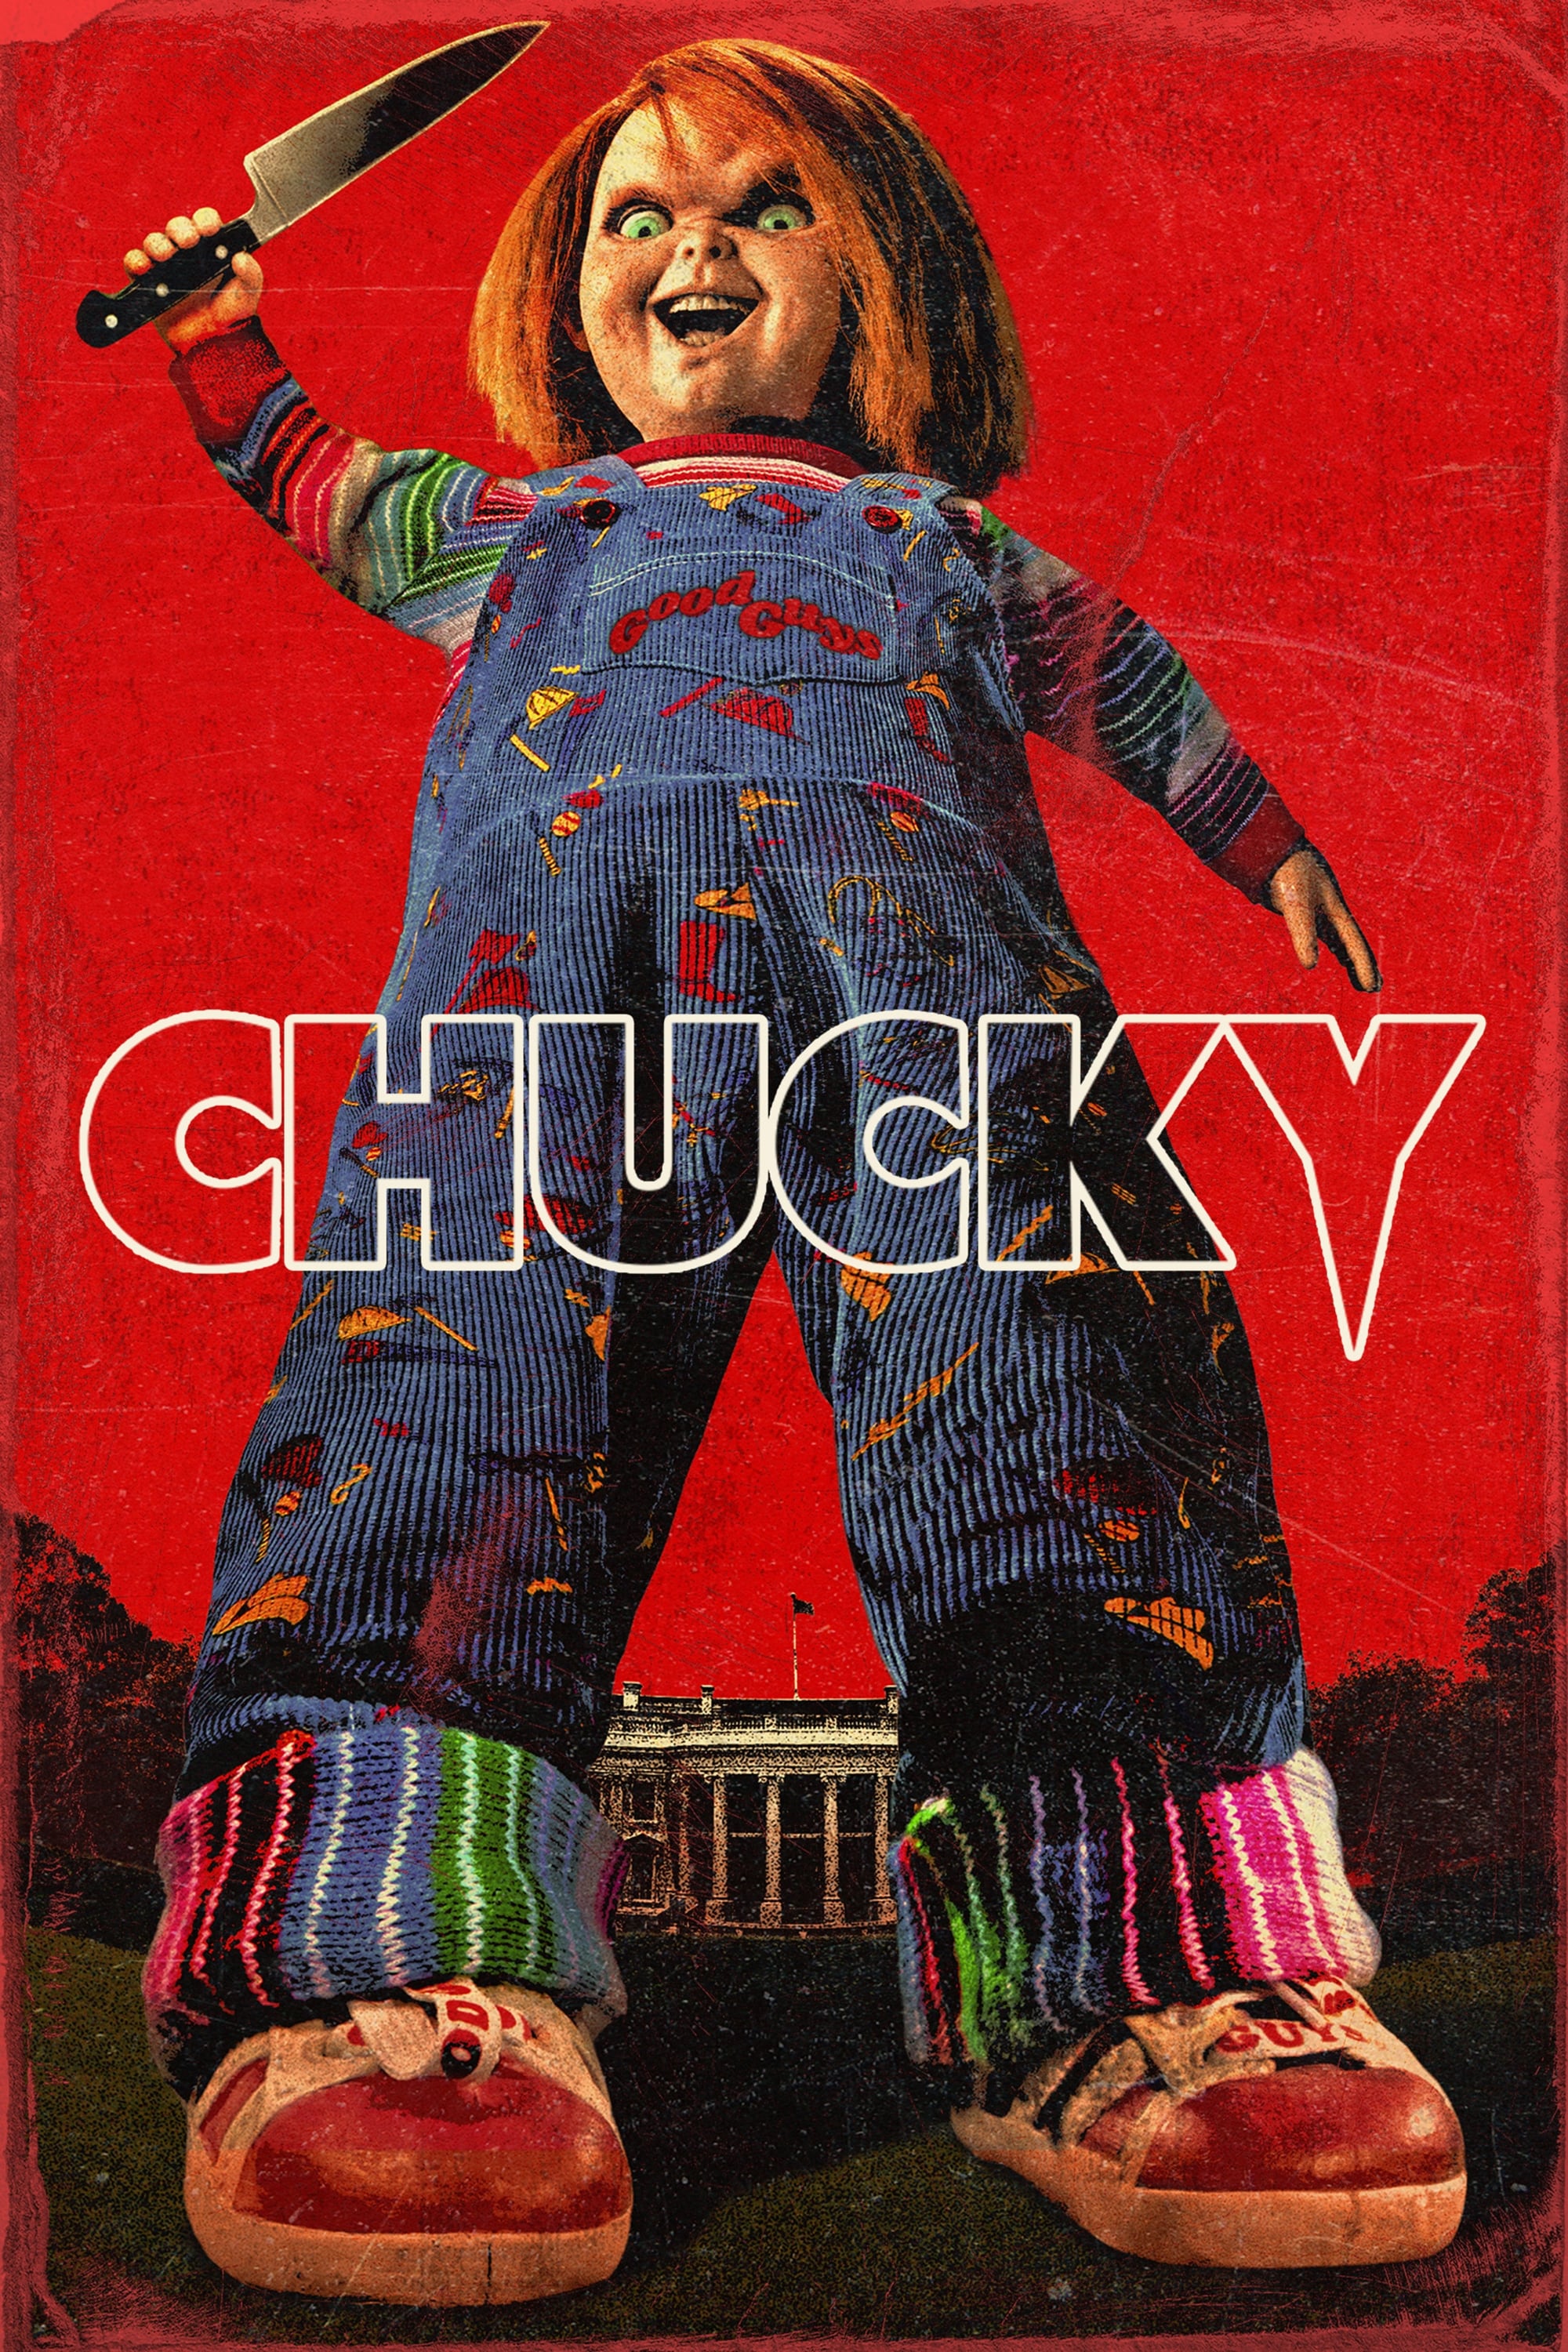 Chucky TV Shows About Parent